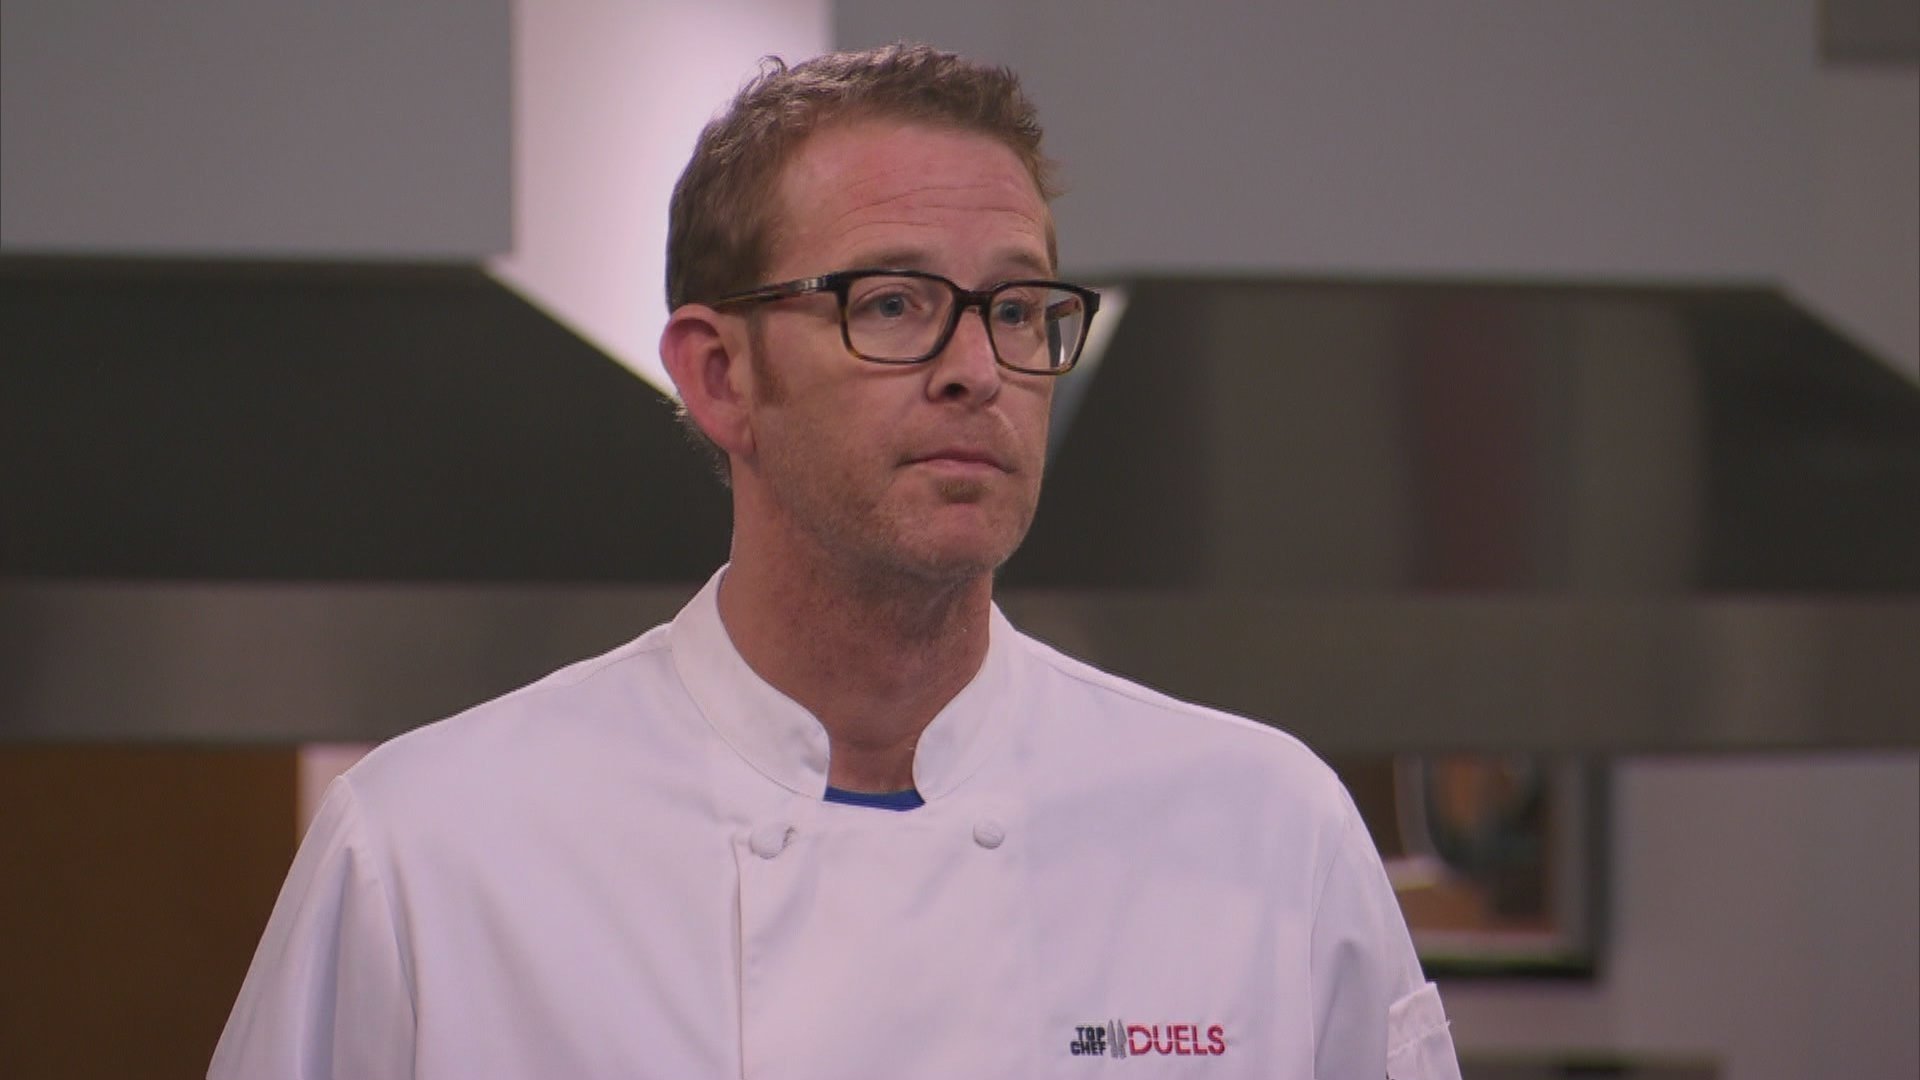 skildring formel temperatur Watch Top Chef Duels Season 1 Episode 4 Online - Stream TV On Demand